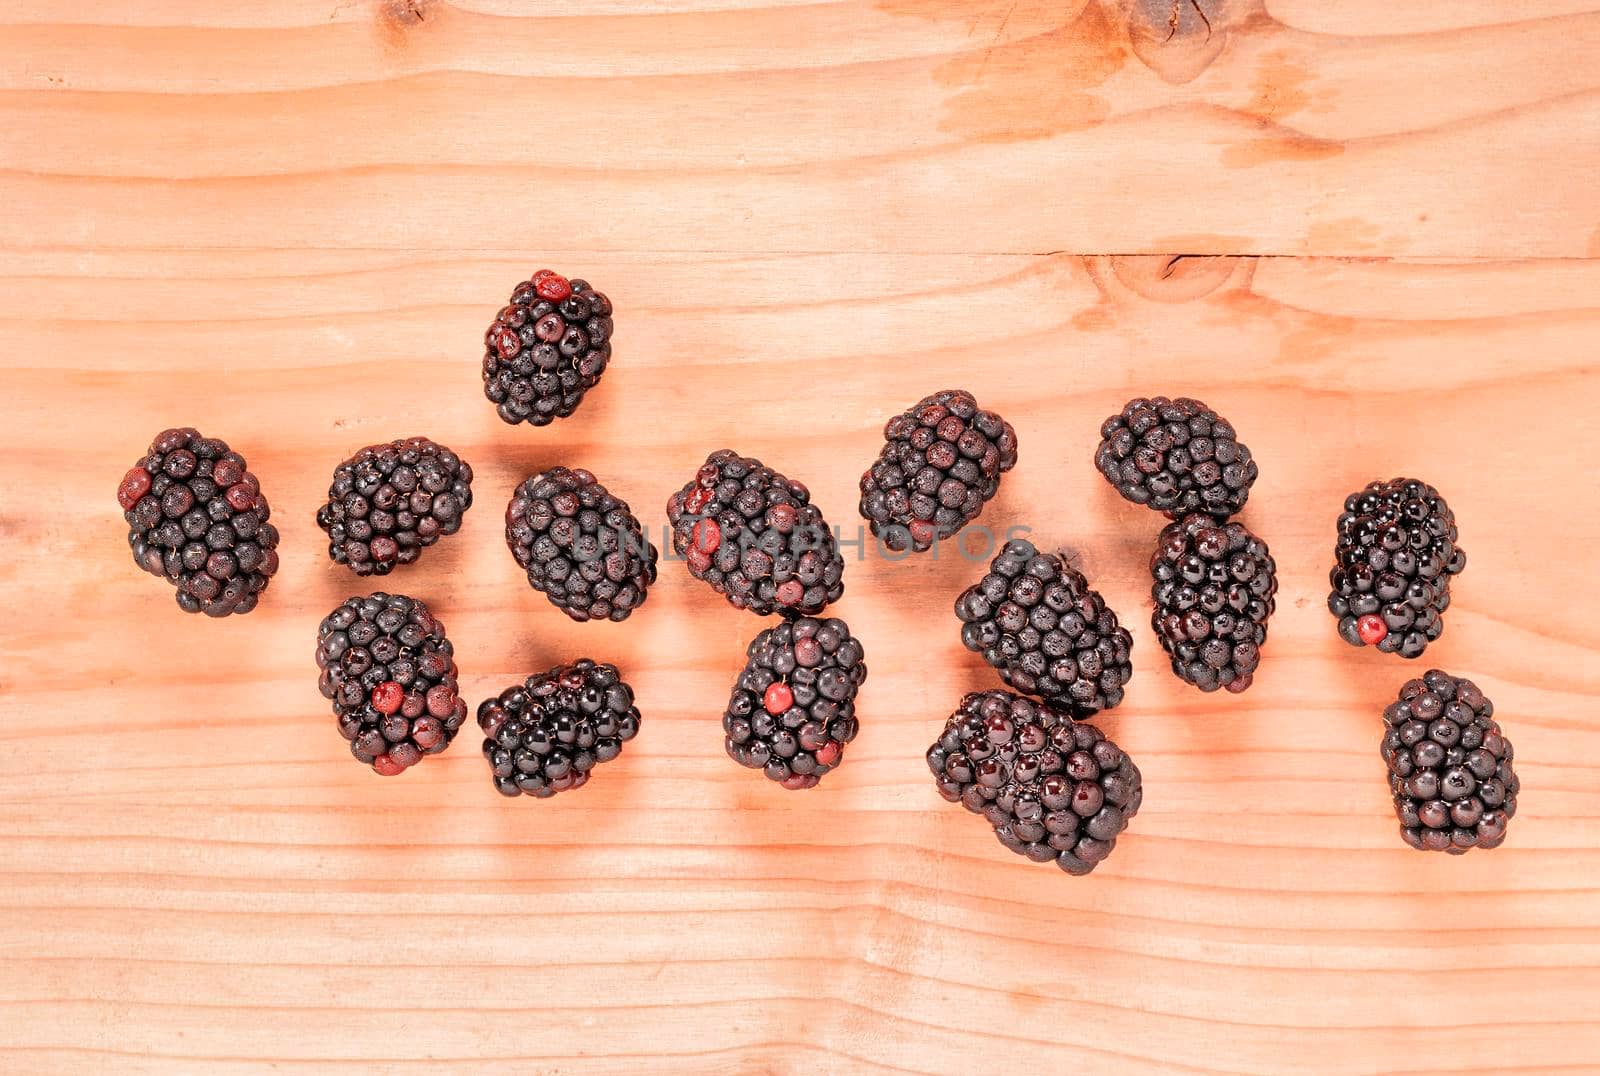 Blackberries on wooden table  by victimewalker